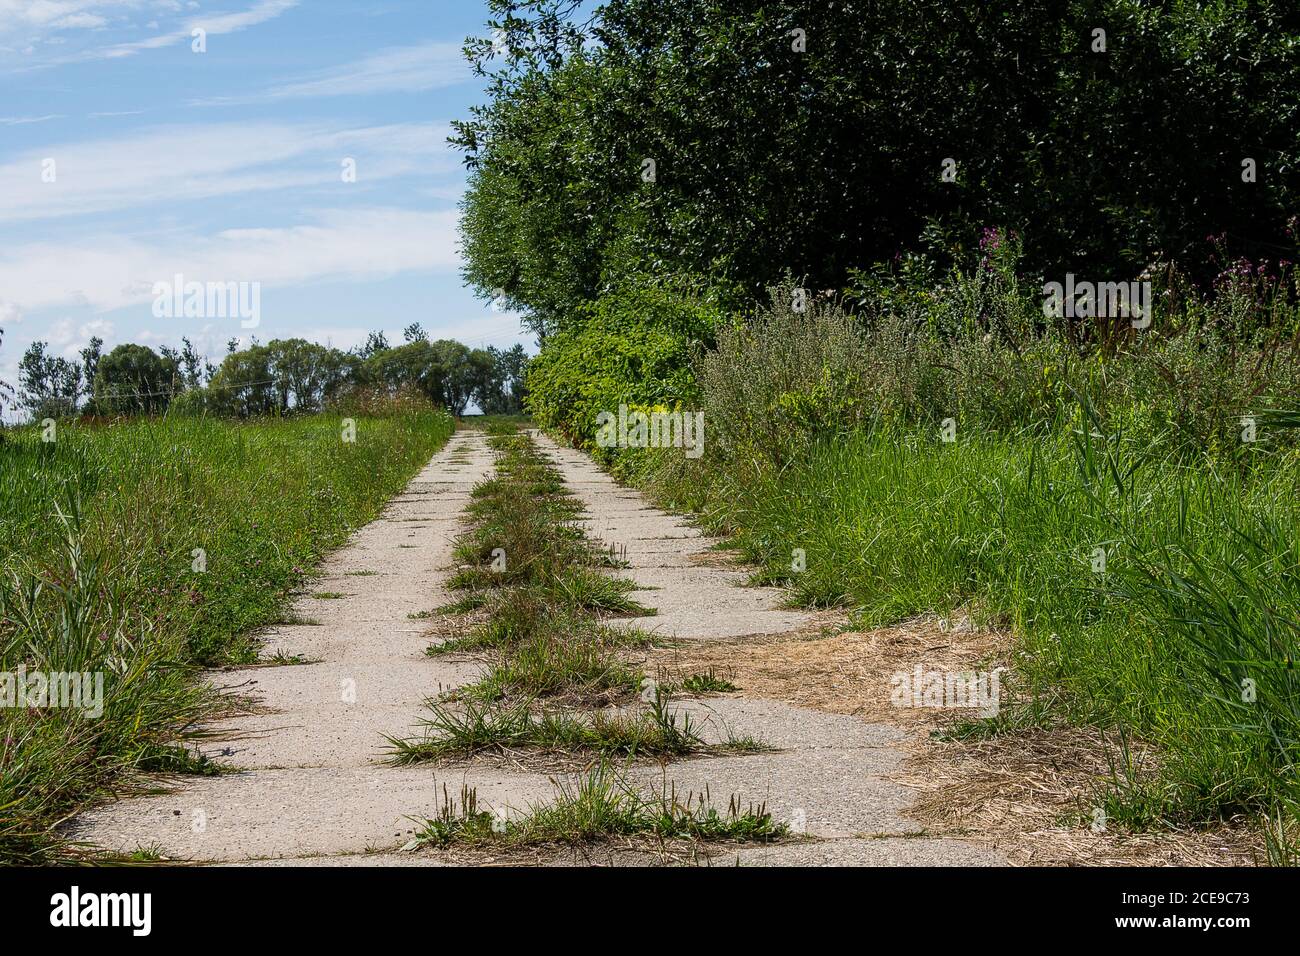 Route de terre inhabituelle avec des dalles de béton. Un champ sur la gauche, une forêt sur la droite. Banque D'Images